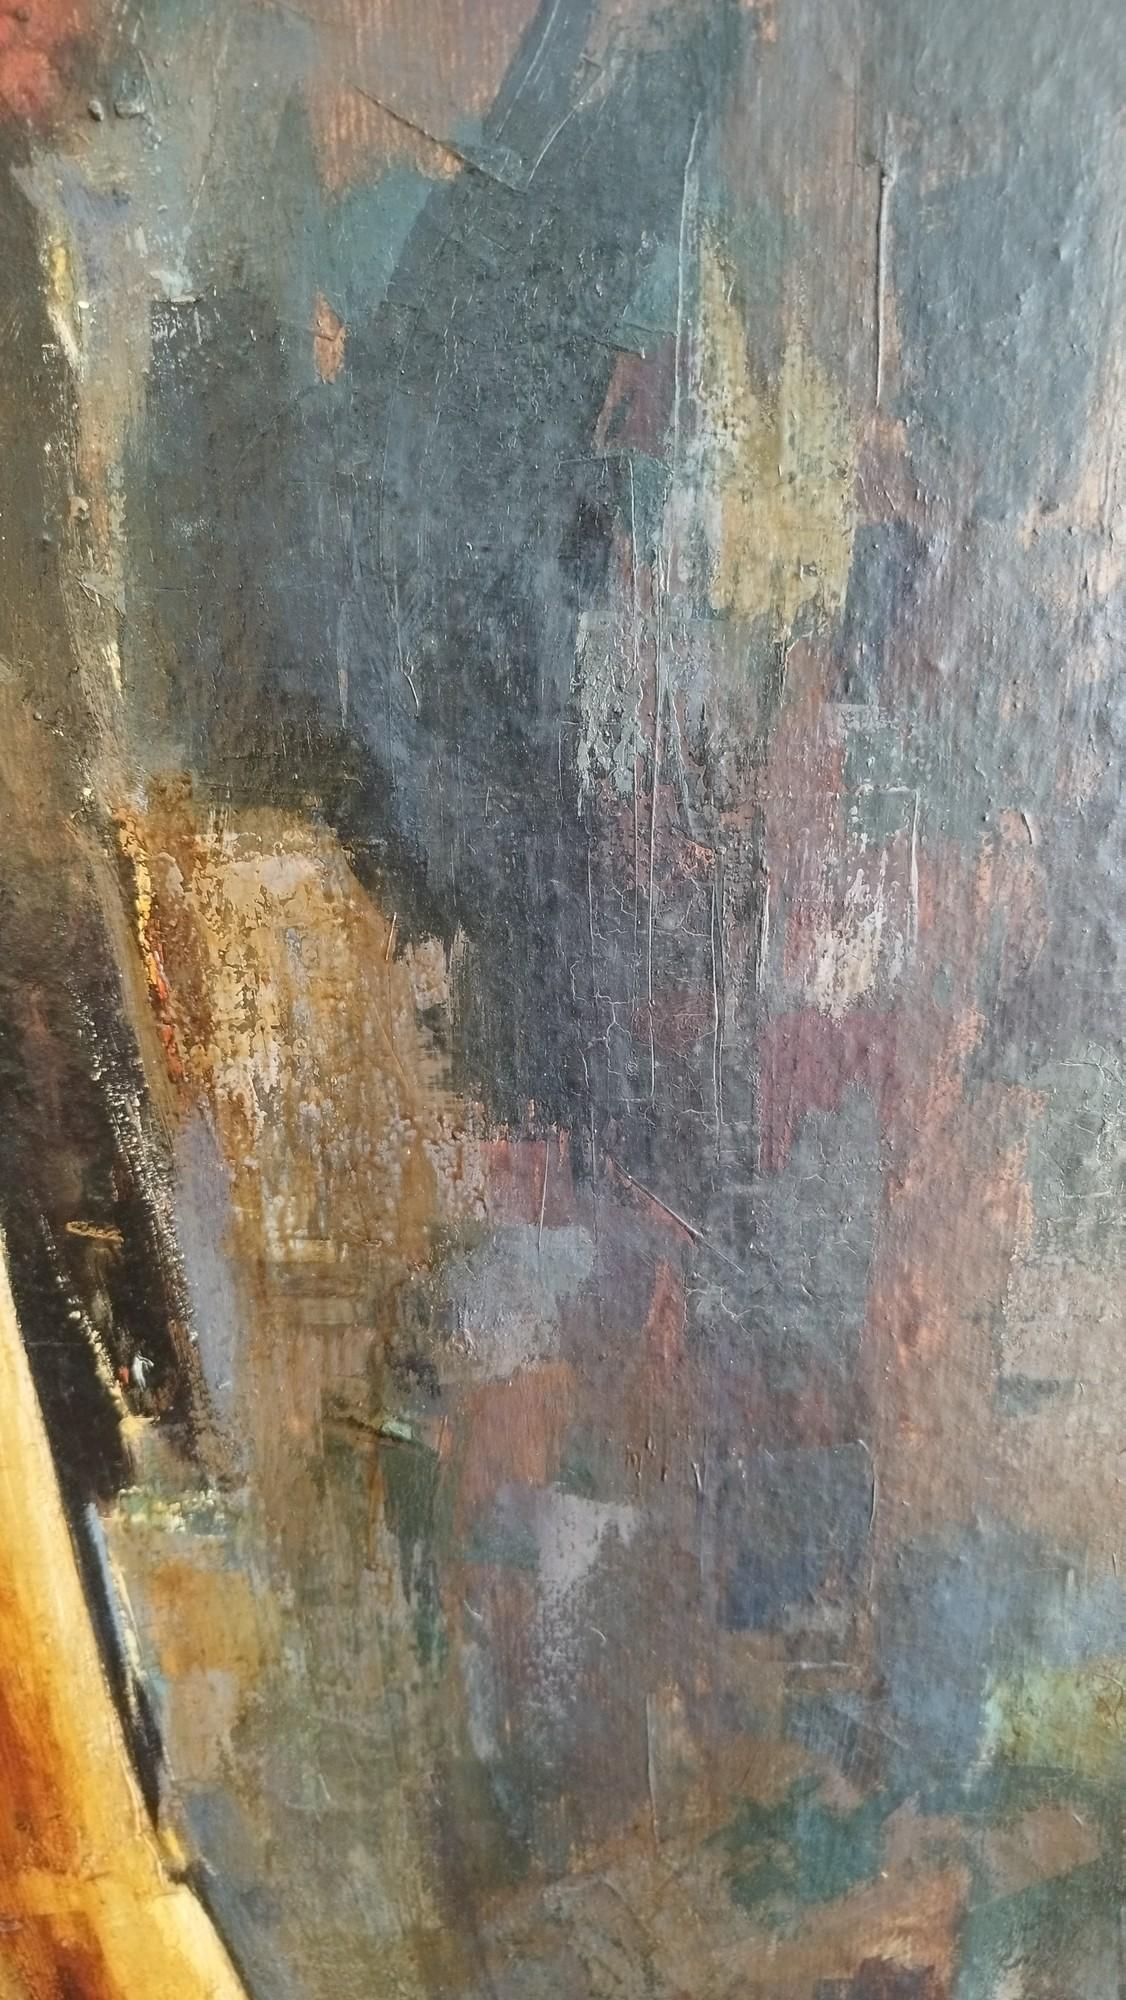 Grande peinture à l'huile sur papier fixée sur un panneau de bois. Il s'agit d'une œuvre de l'artiste Michel Nourry (1927-2006), signée et datée de 1969. La profondeur de toutes les couleurs est très chaude et tout simplement superbe.

N'hésitez pas